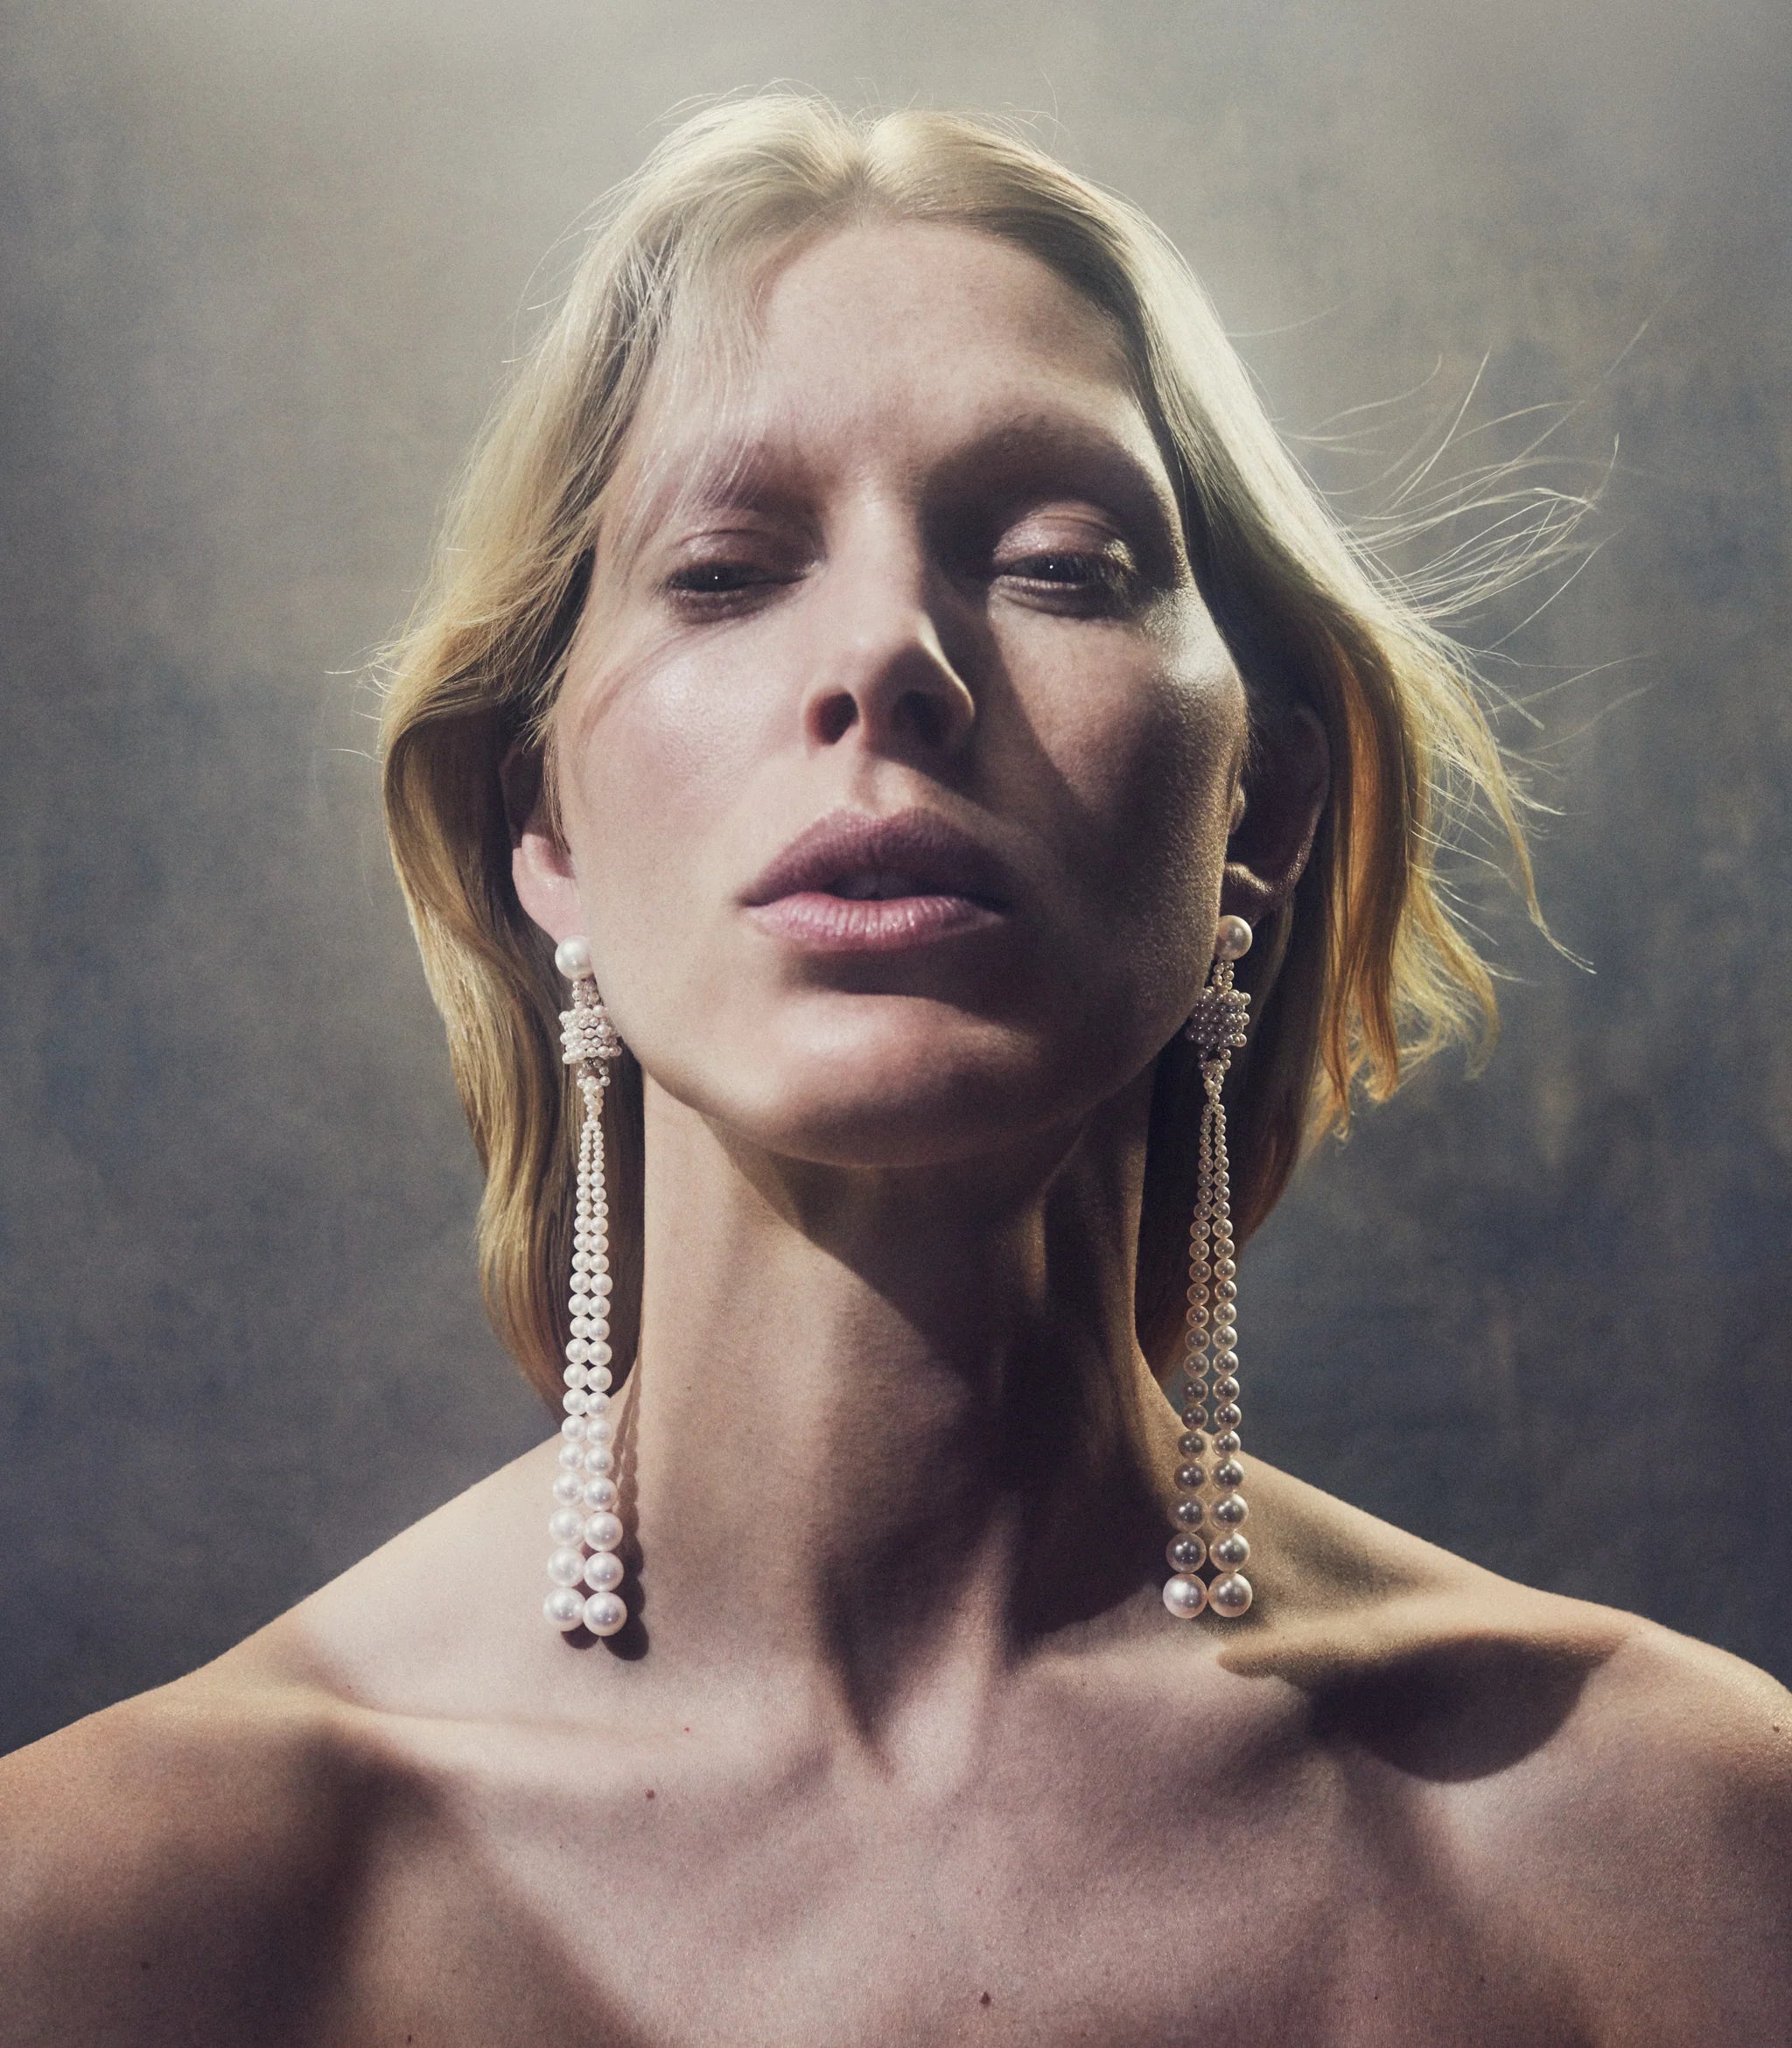 SOPHIE BILLE BRAHE Peggy Rosette 14-karat gold pearl necklace